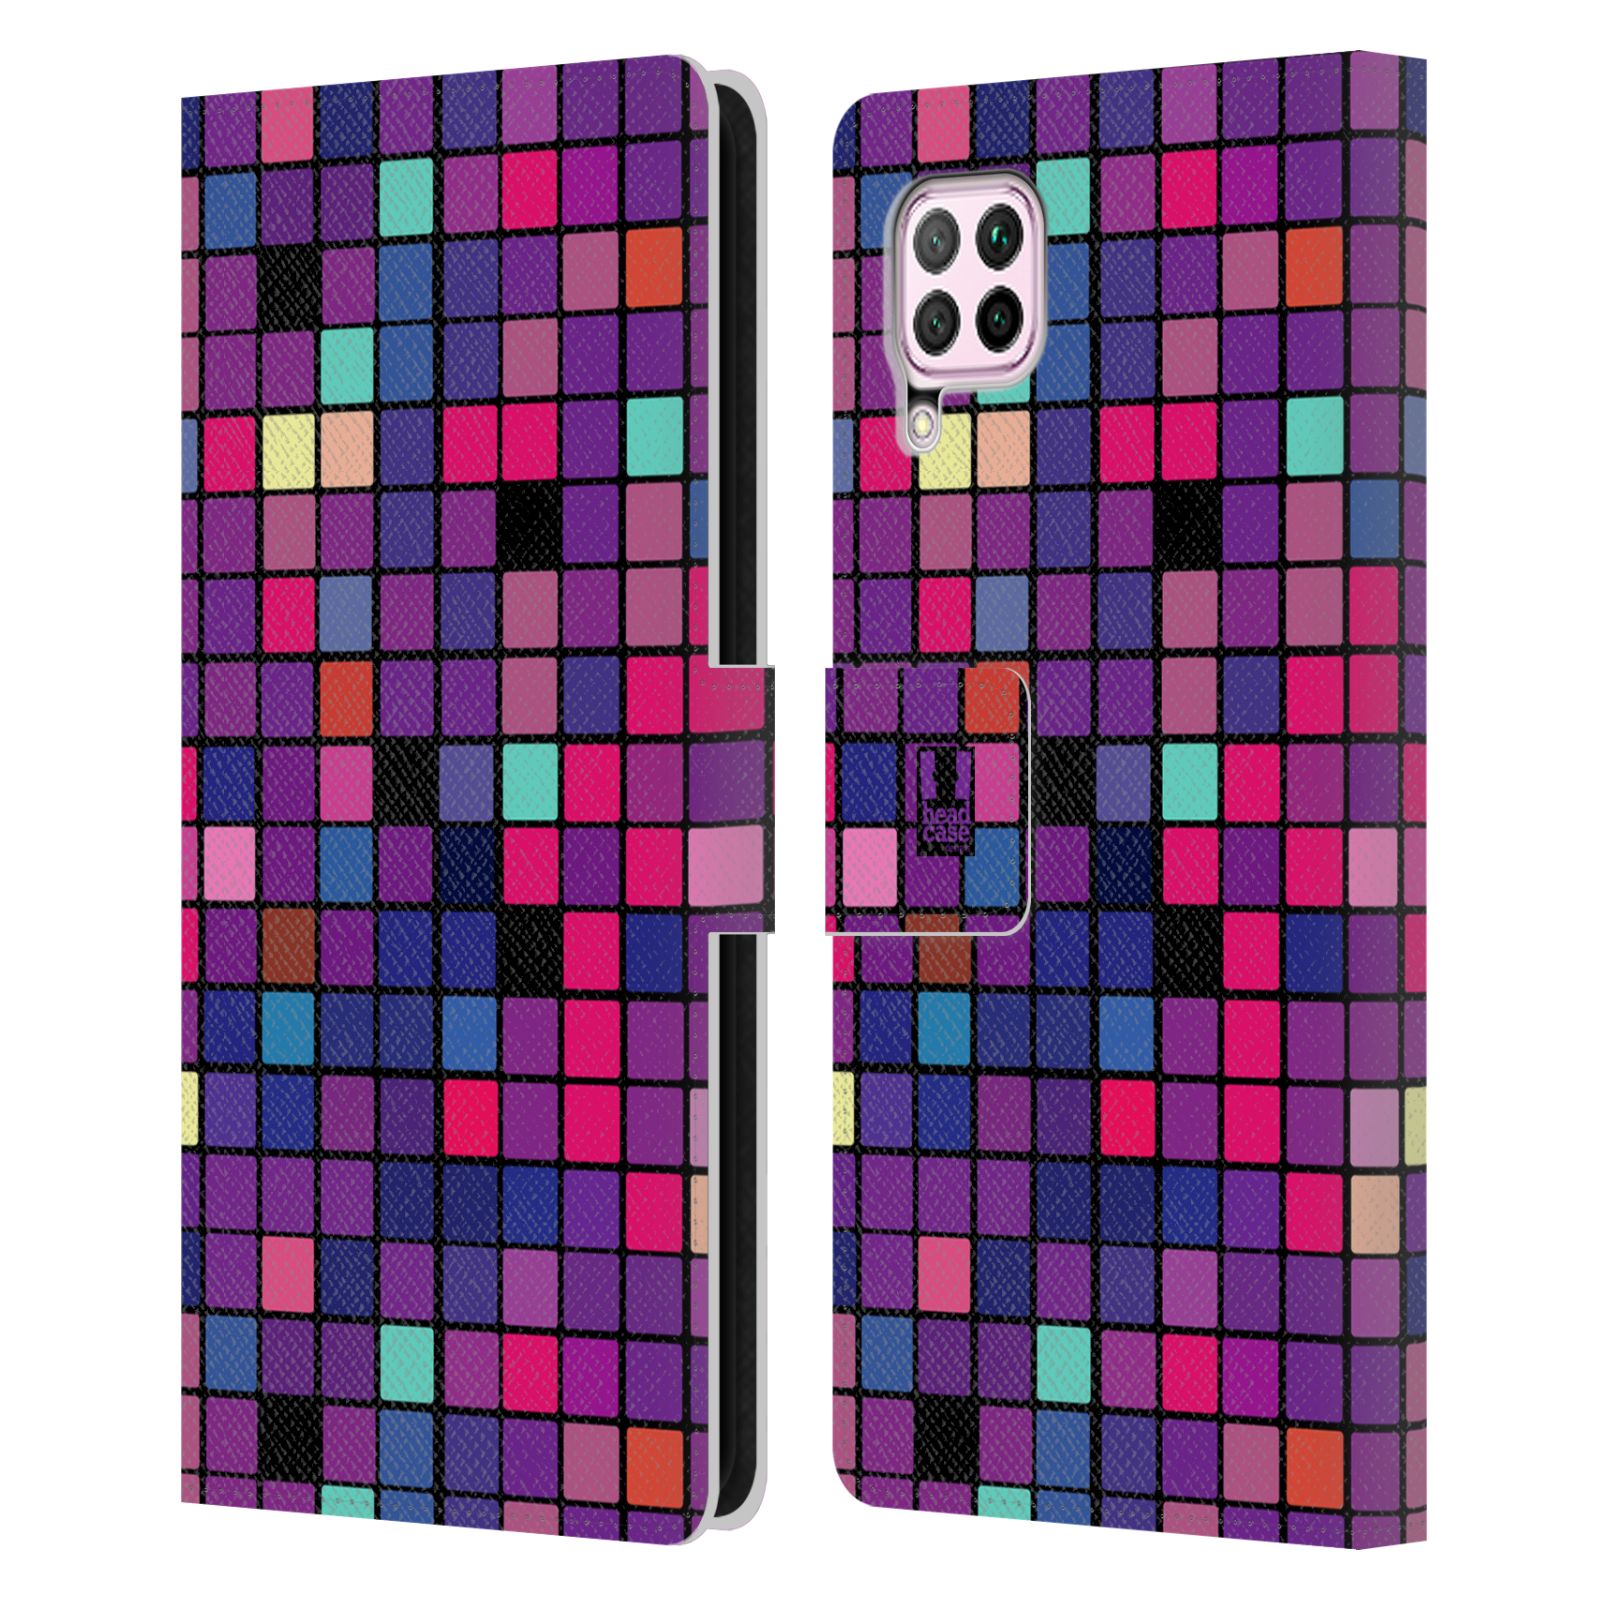 Pouzdro pro mobil Huawei P40 LITE - Disko style fialová